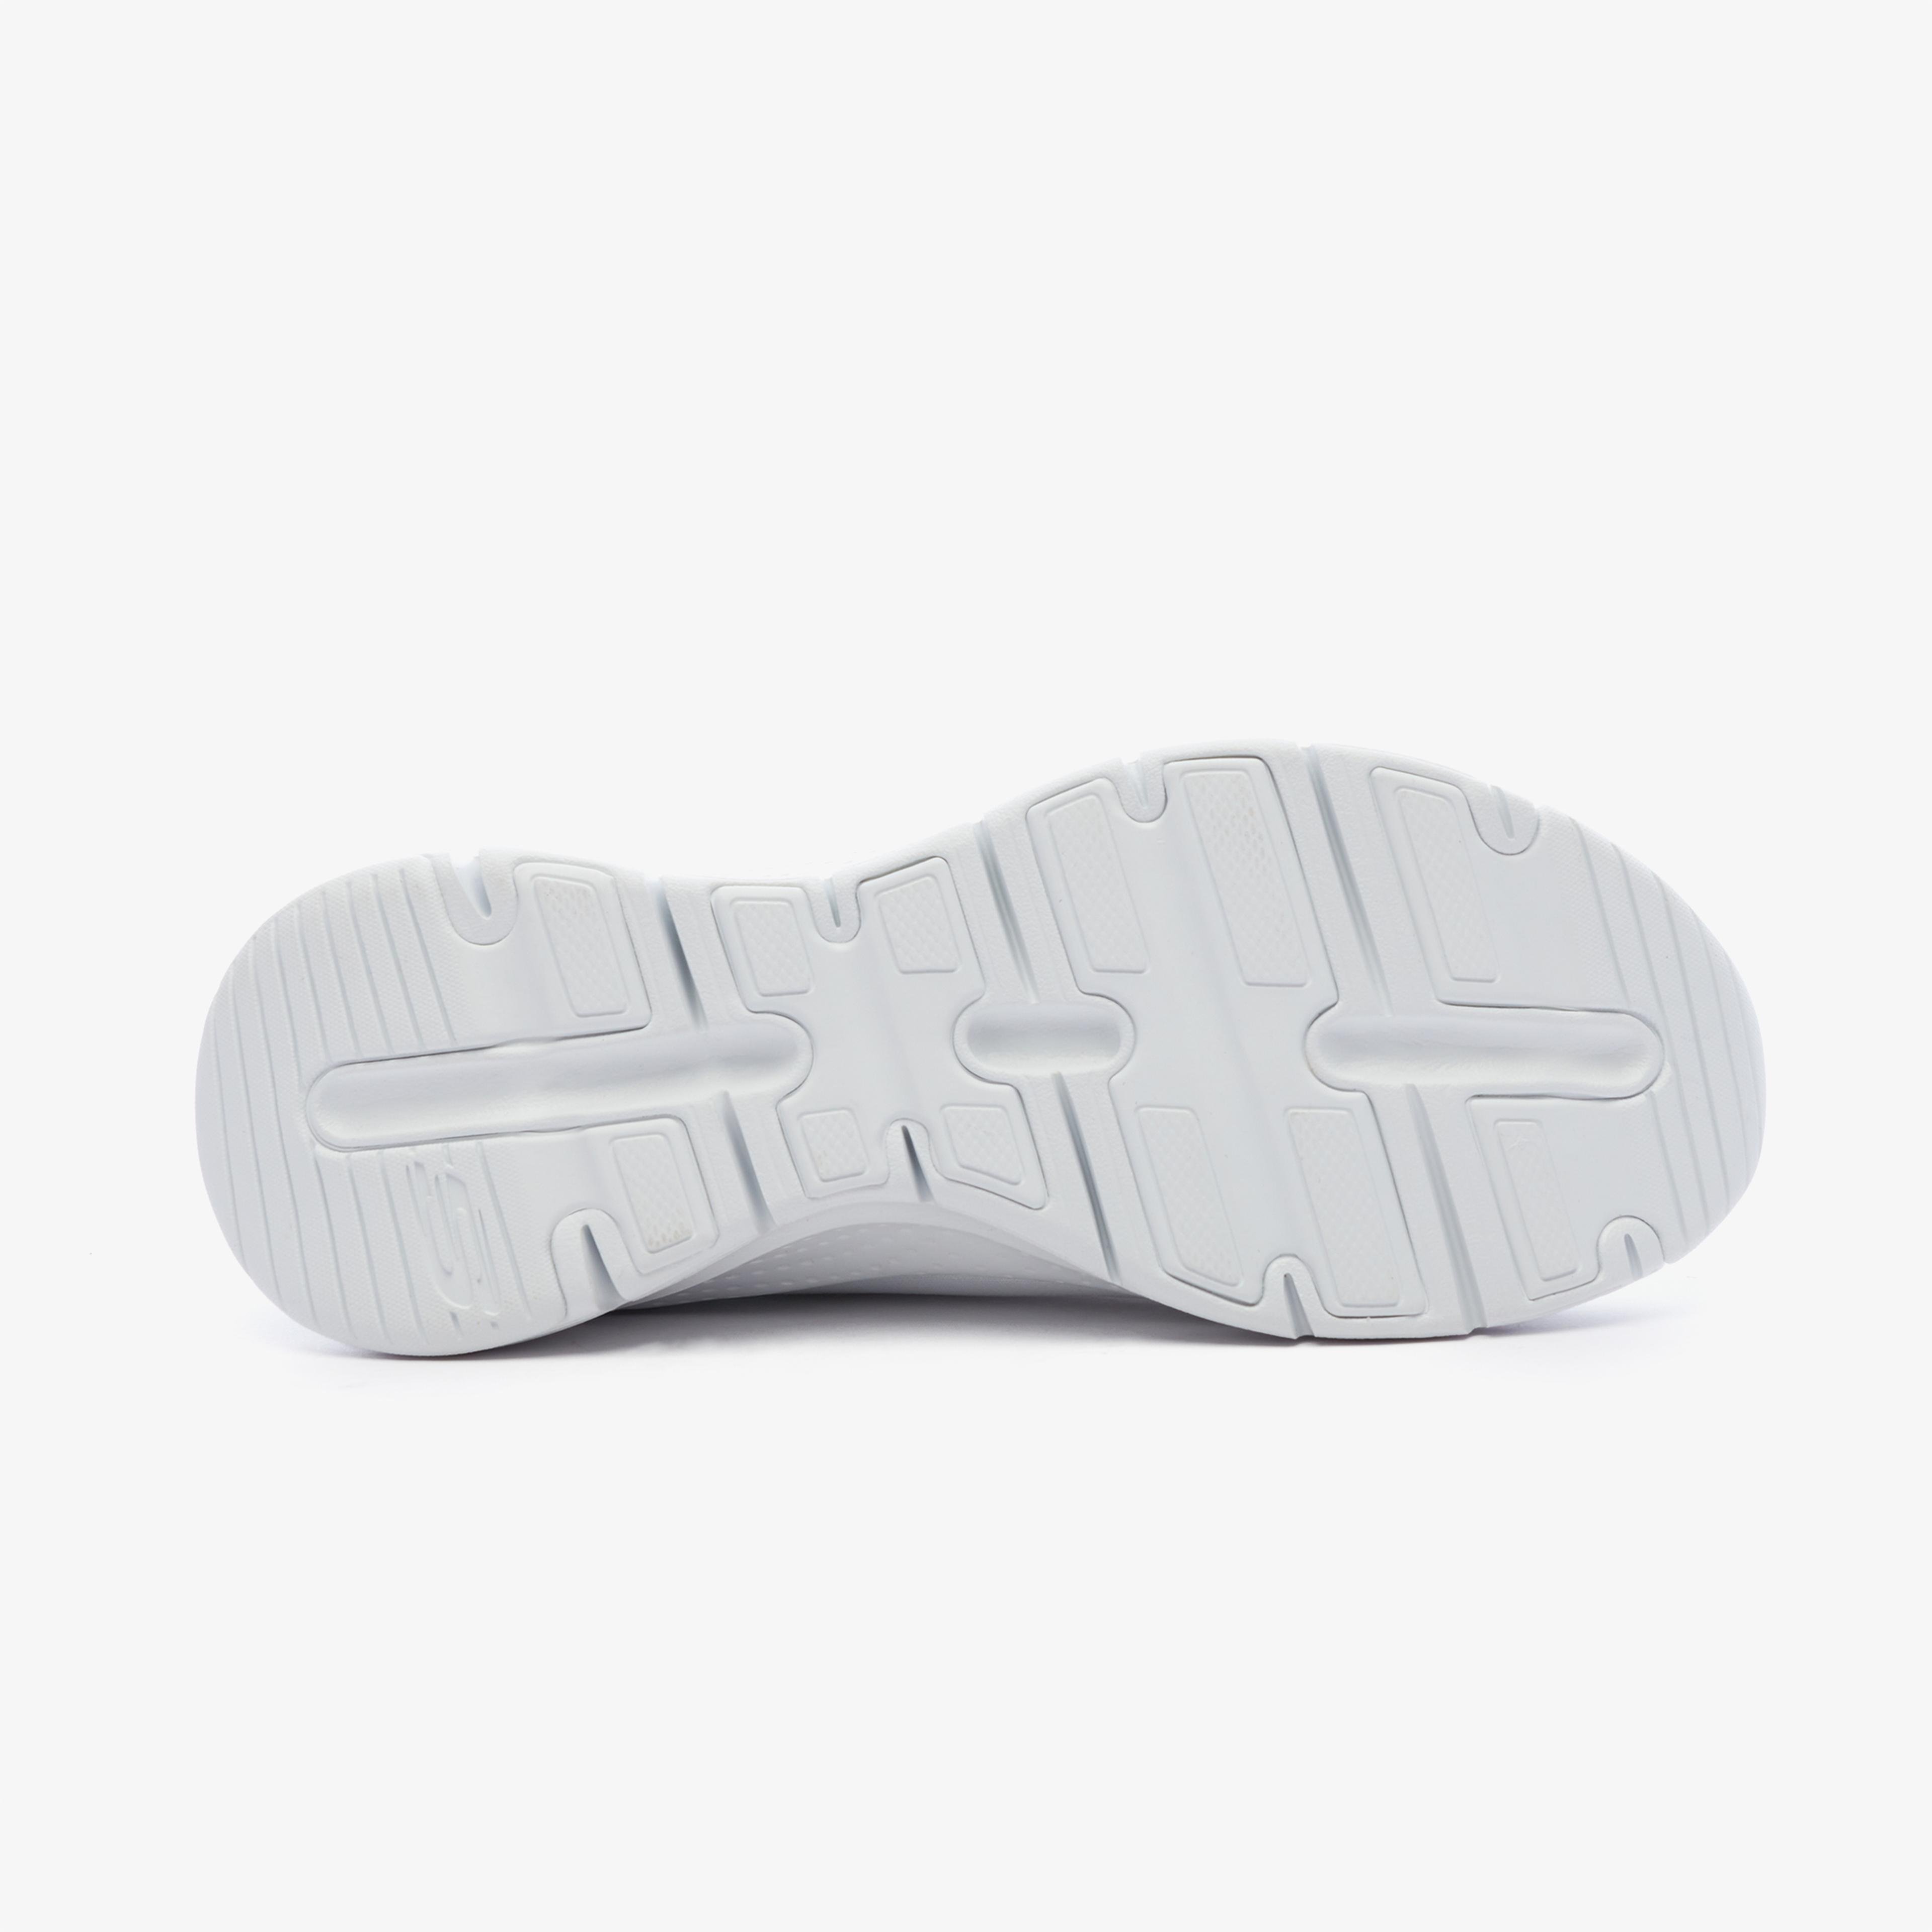 Skechers Arch Fit - Sunny Outlook Kadın Beyaz Spor Ayakkabı